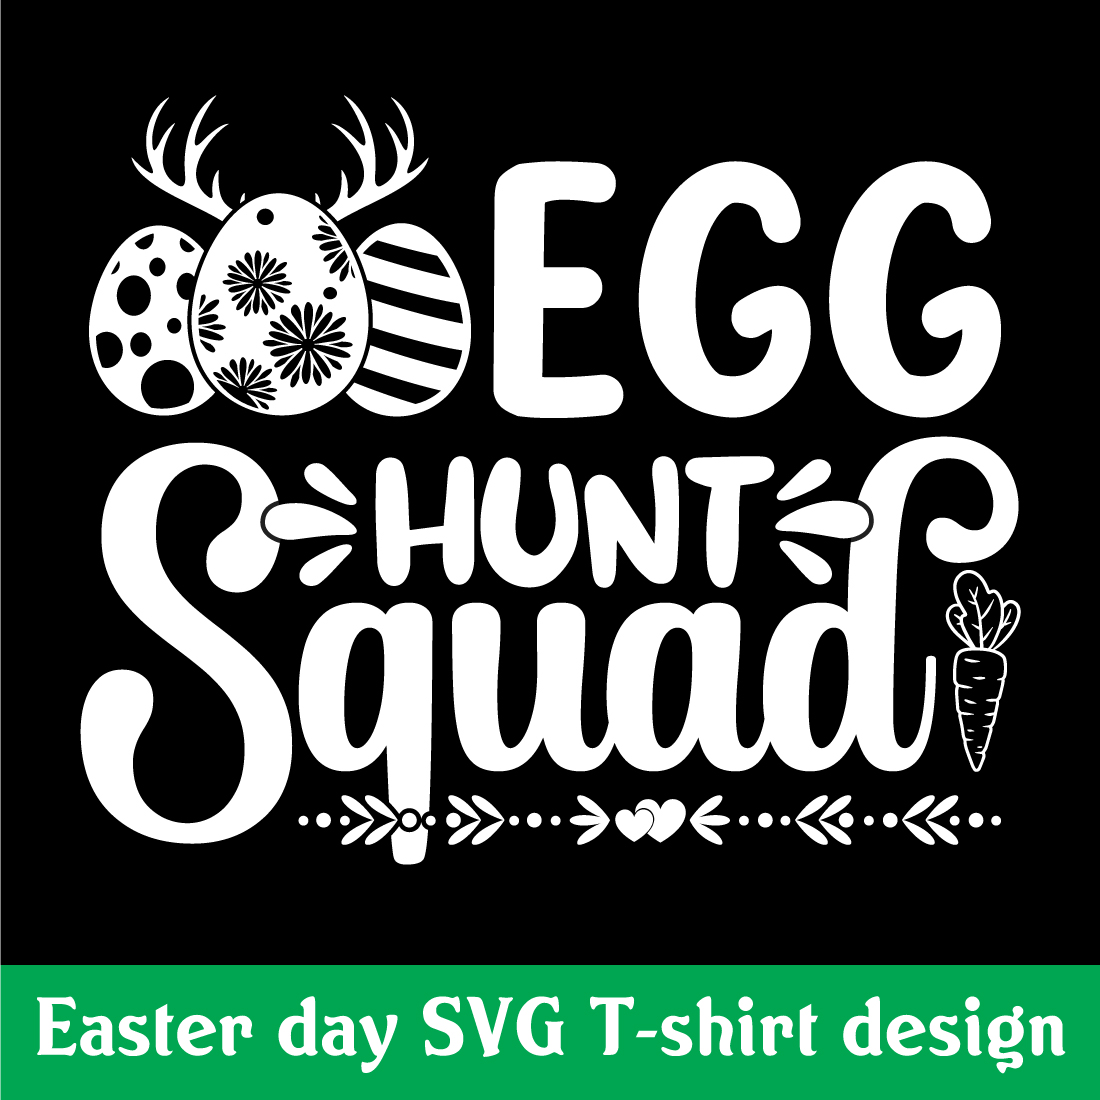 Egg hunt Squad T shirt design preview image.